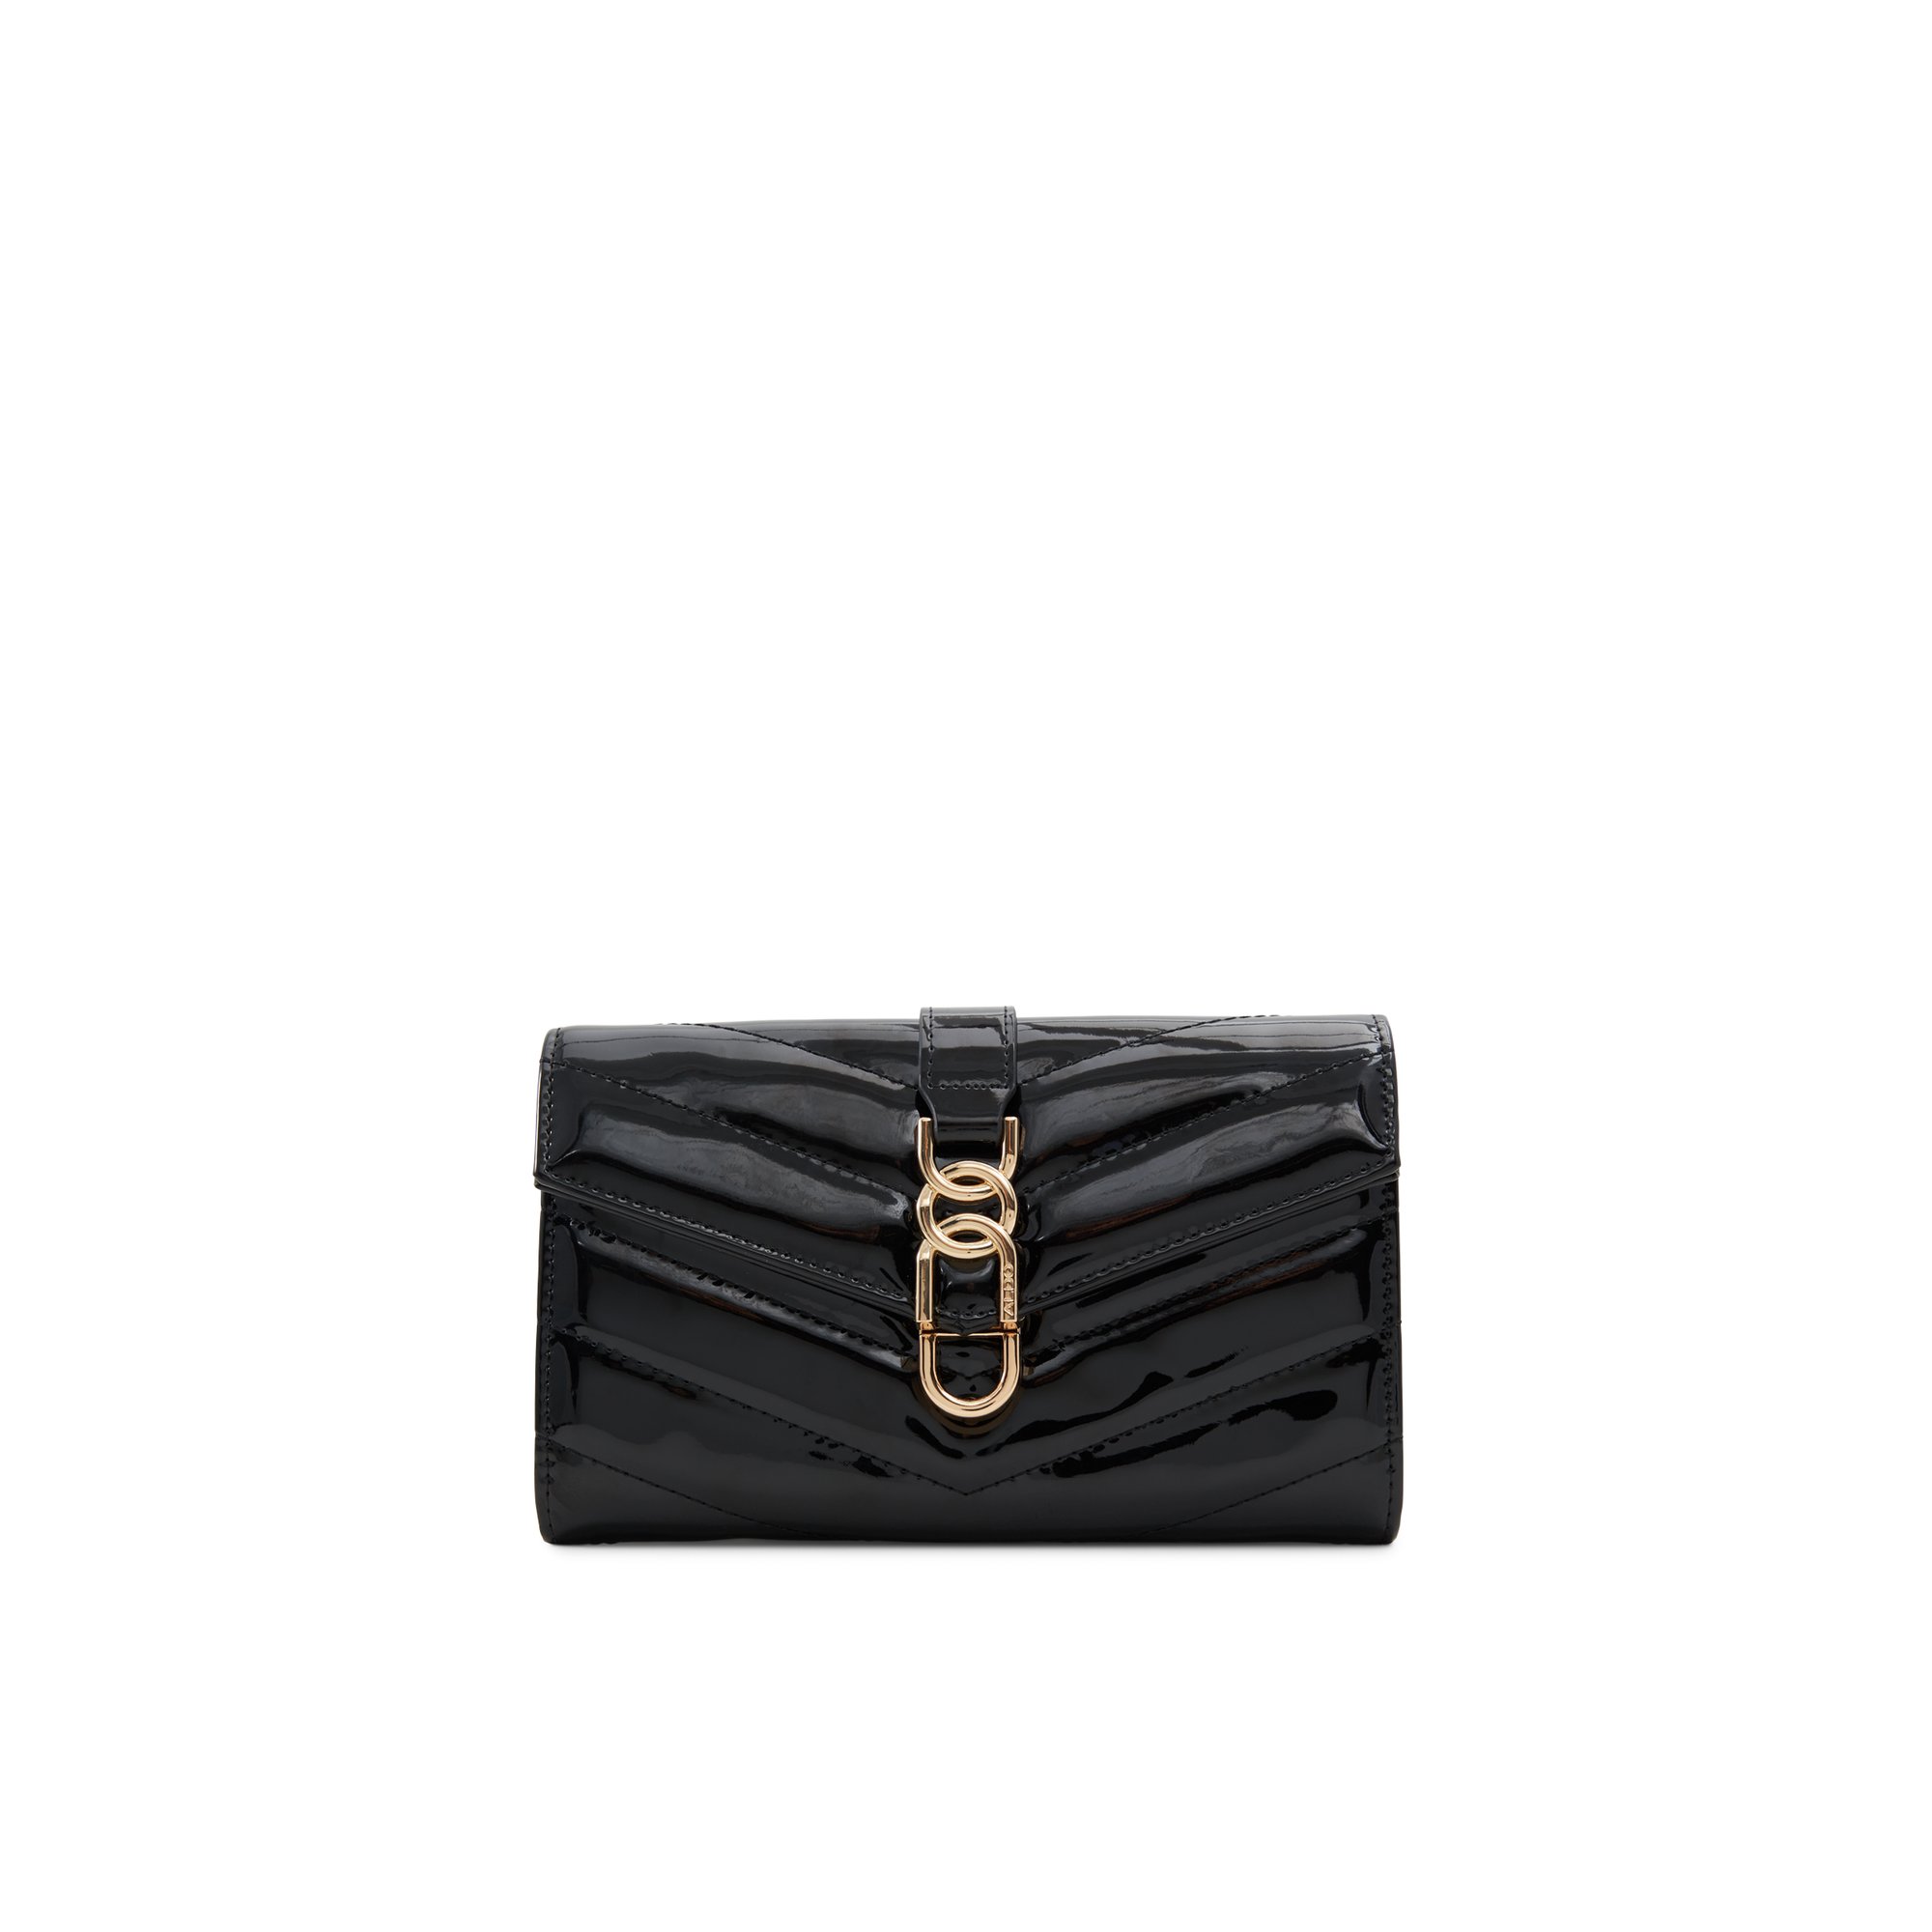 ALDO Tigerrqueenn - Women's Crossbody Handbag - Black